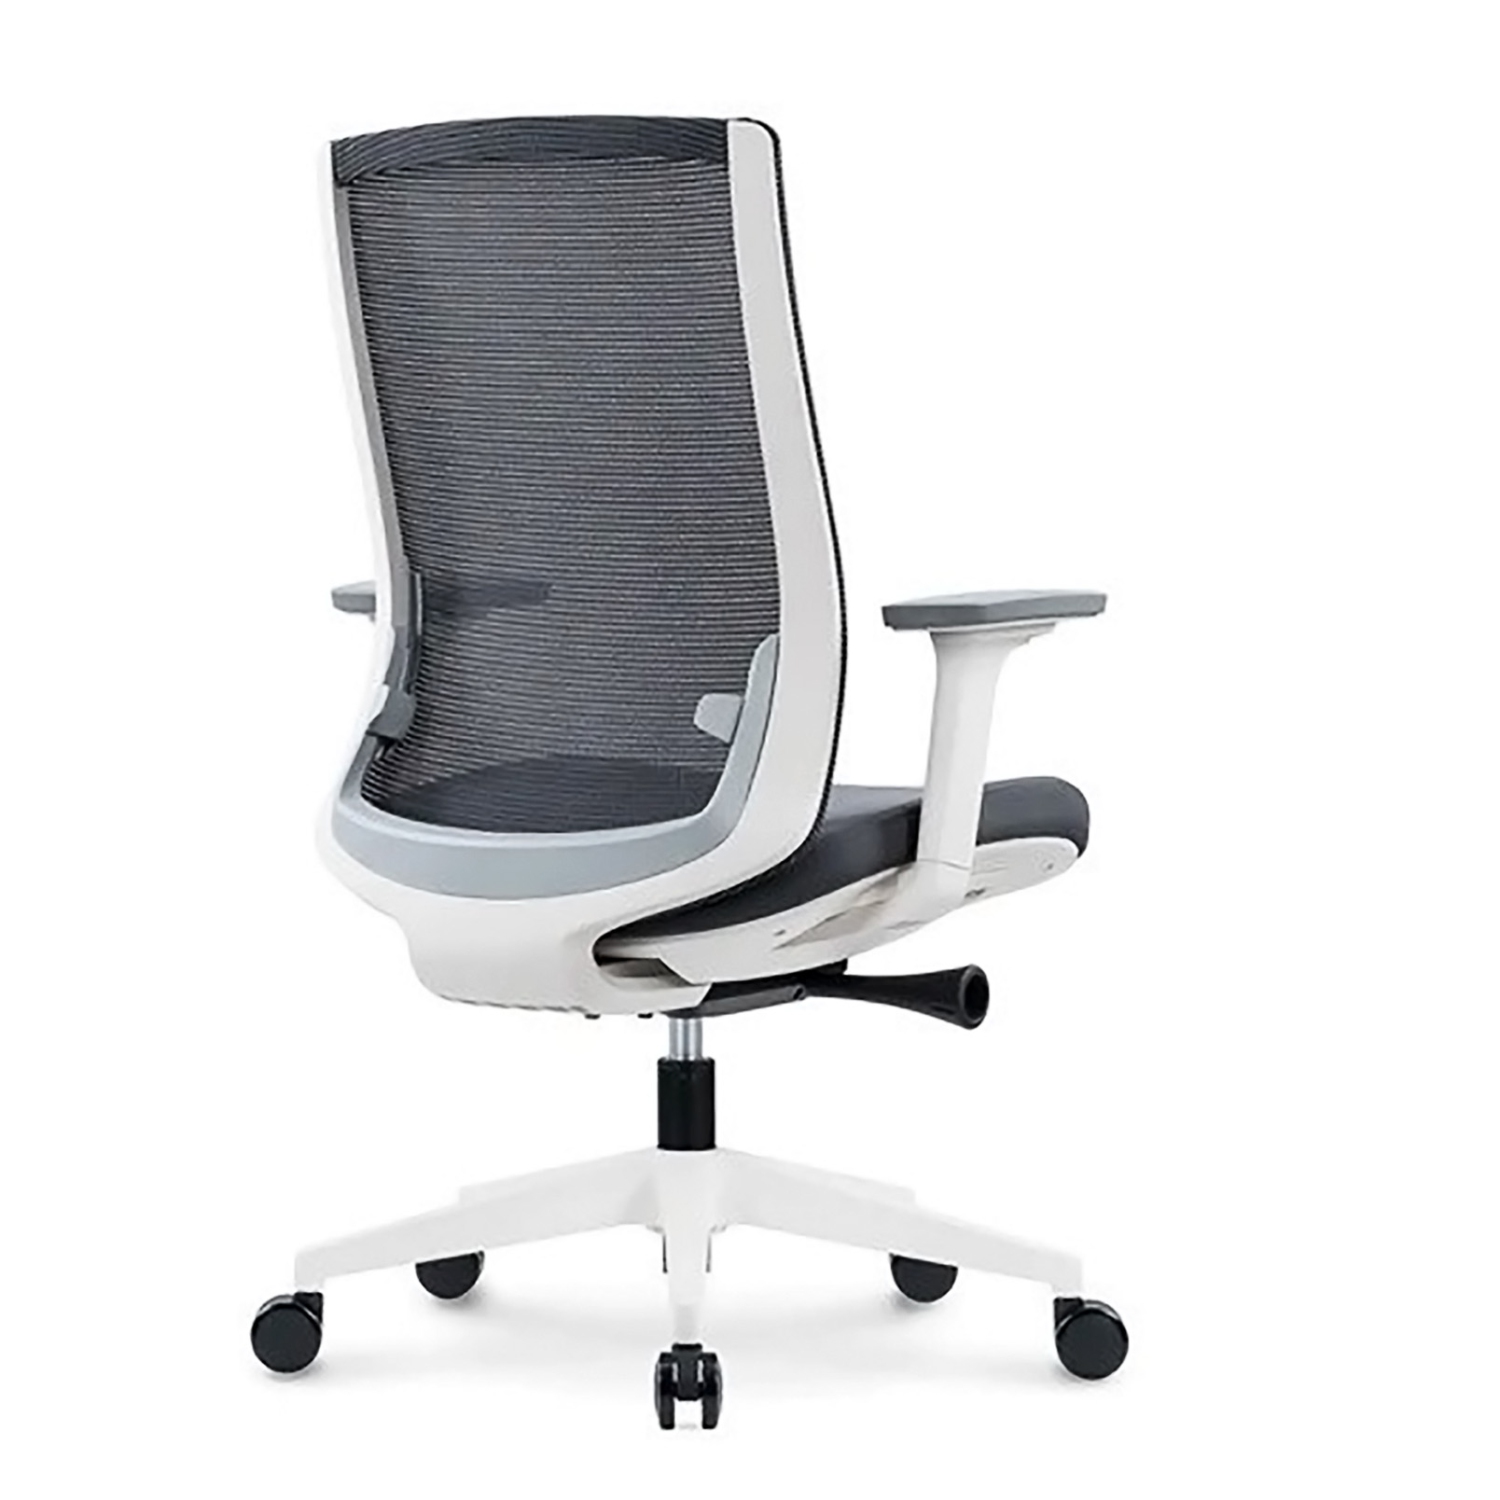 TaskChair Heavy-Duty Executive Home Office Chair Ergonomic Desk